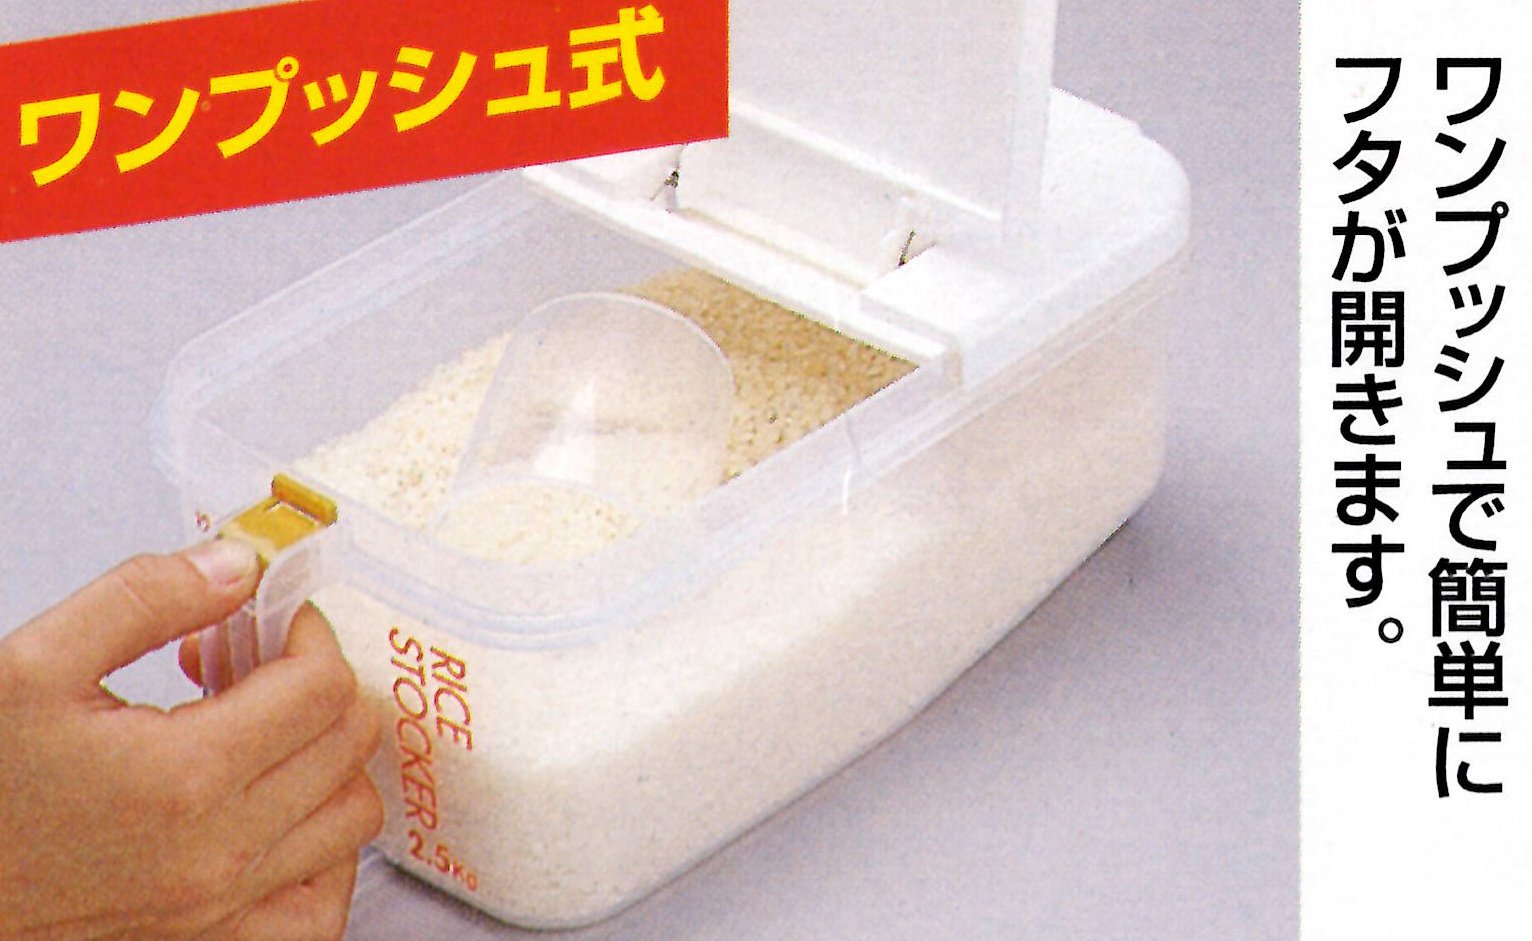 Skater 2.5Kg Refrigerator Rice Bins - Horizontal, Made In Japan